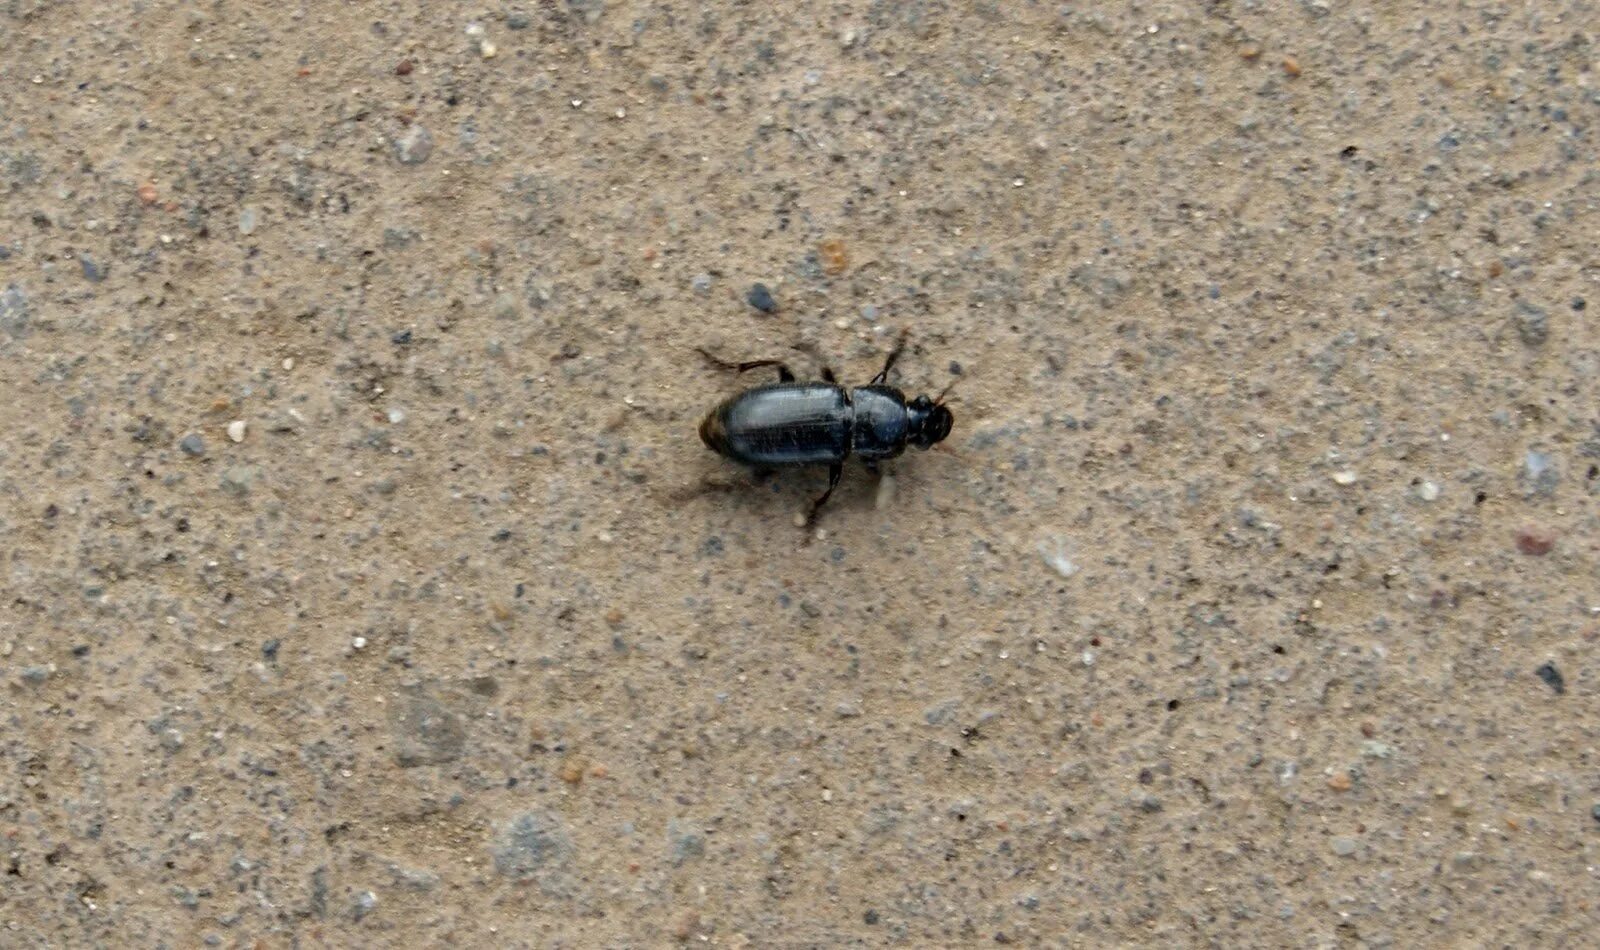 Чёрный Жук похожий на таракана. Черные жуки похожие на тараканов. Чёрные жуки в квартире похожие на тараканов. Жук на асфальте. Черный жук похожий на таракана